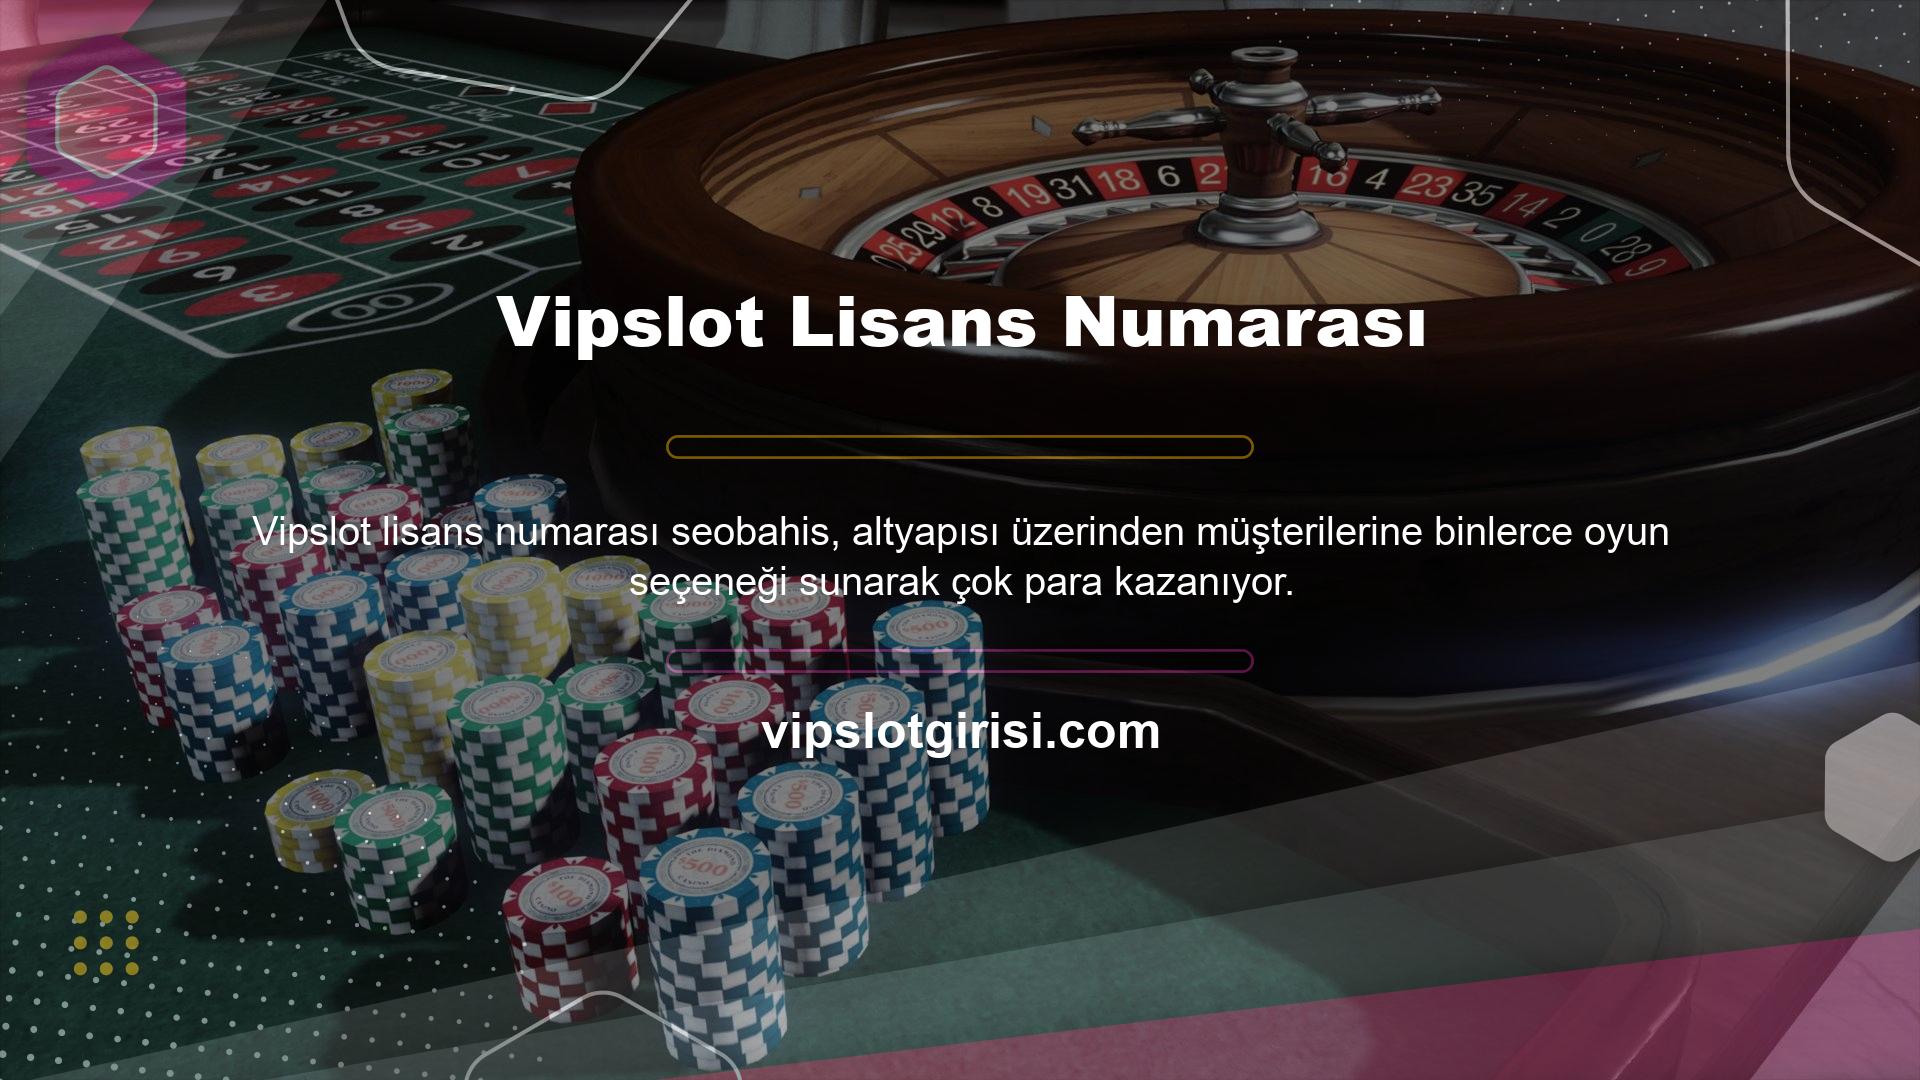 Vipslot daha fazla ilgi çekmek amacıyla web sitesine giriş bilgilerini değiştirdiği söyleniyor